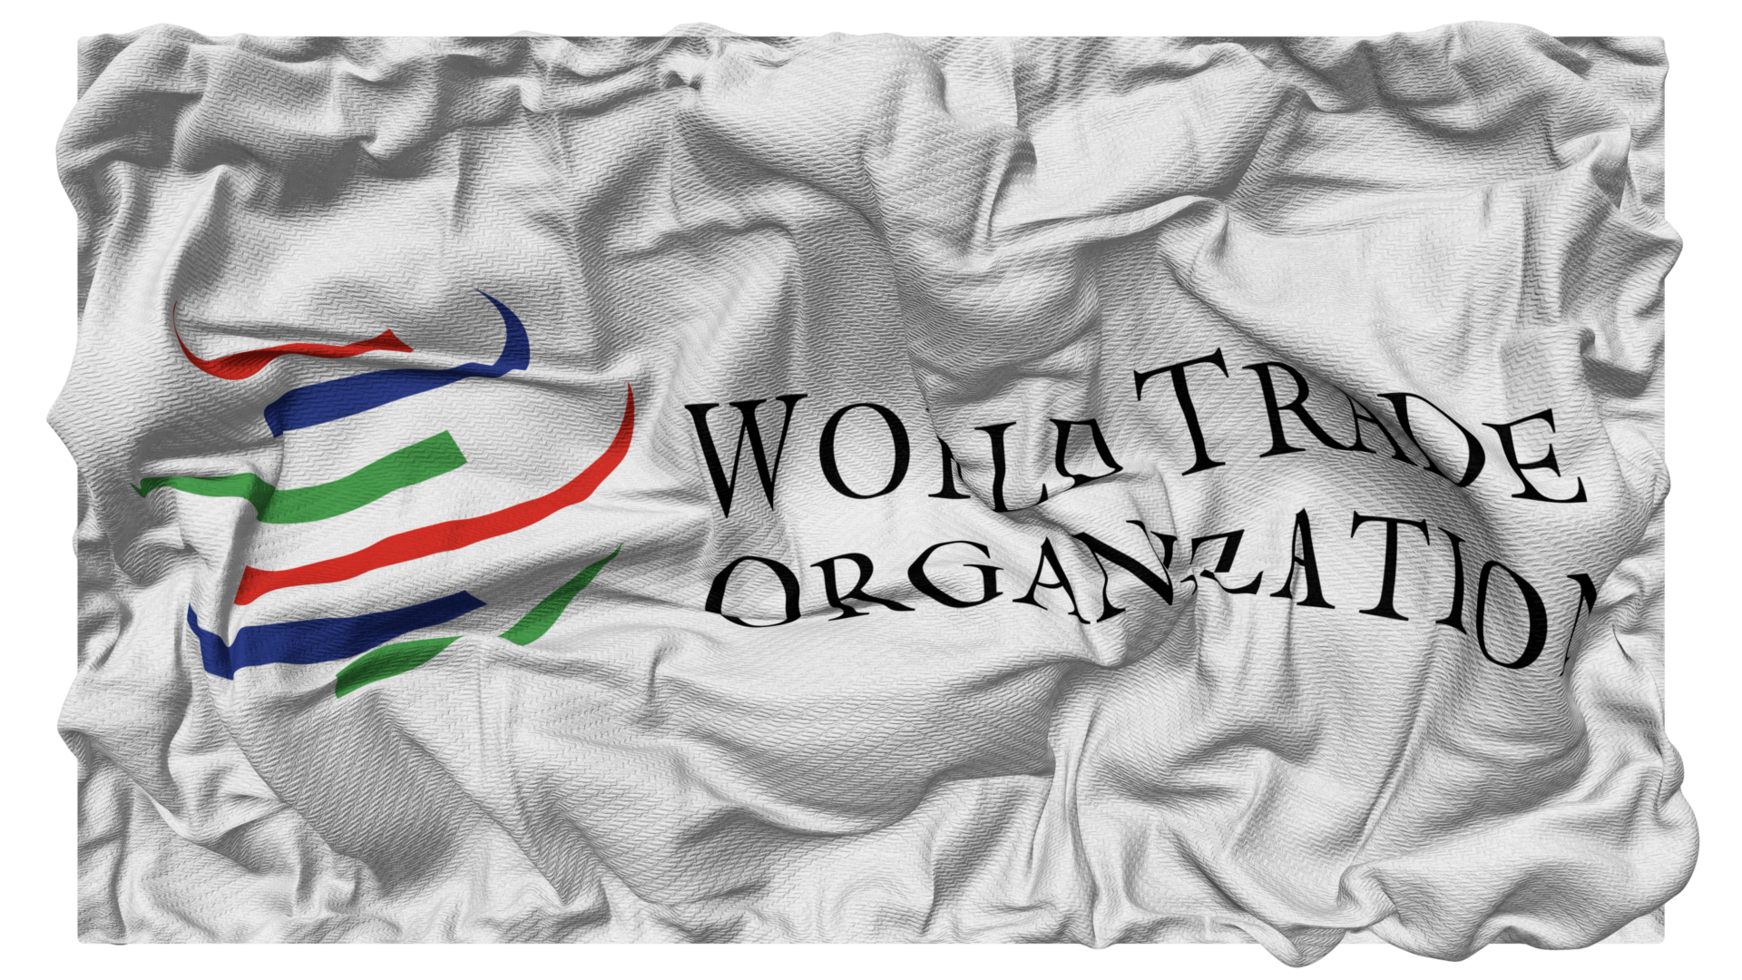 värld handel organisation, wto flagga vågor med realistisk stöta textur, flagga bakgrund, 3d tolkning png